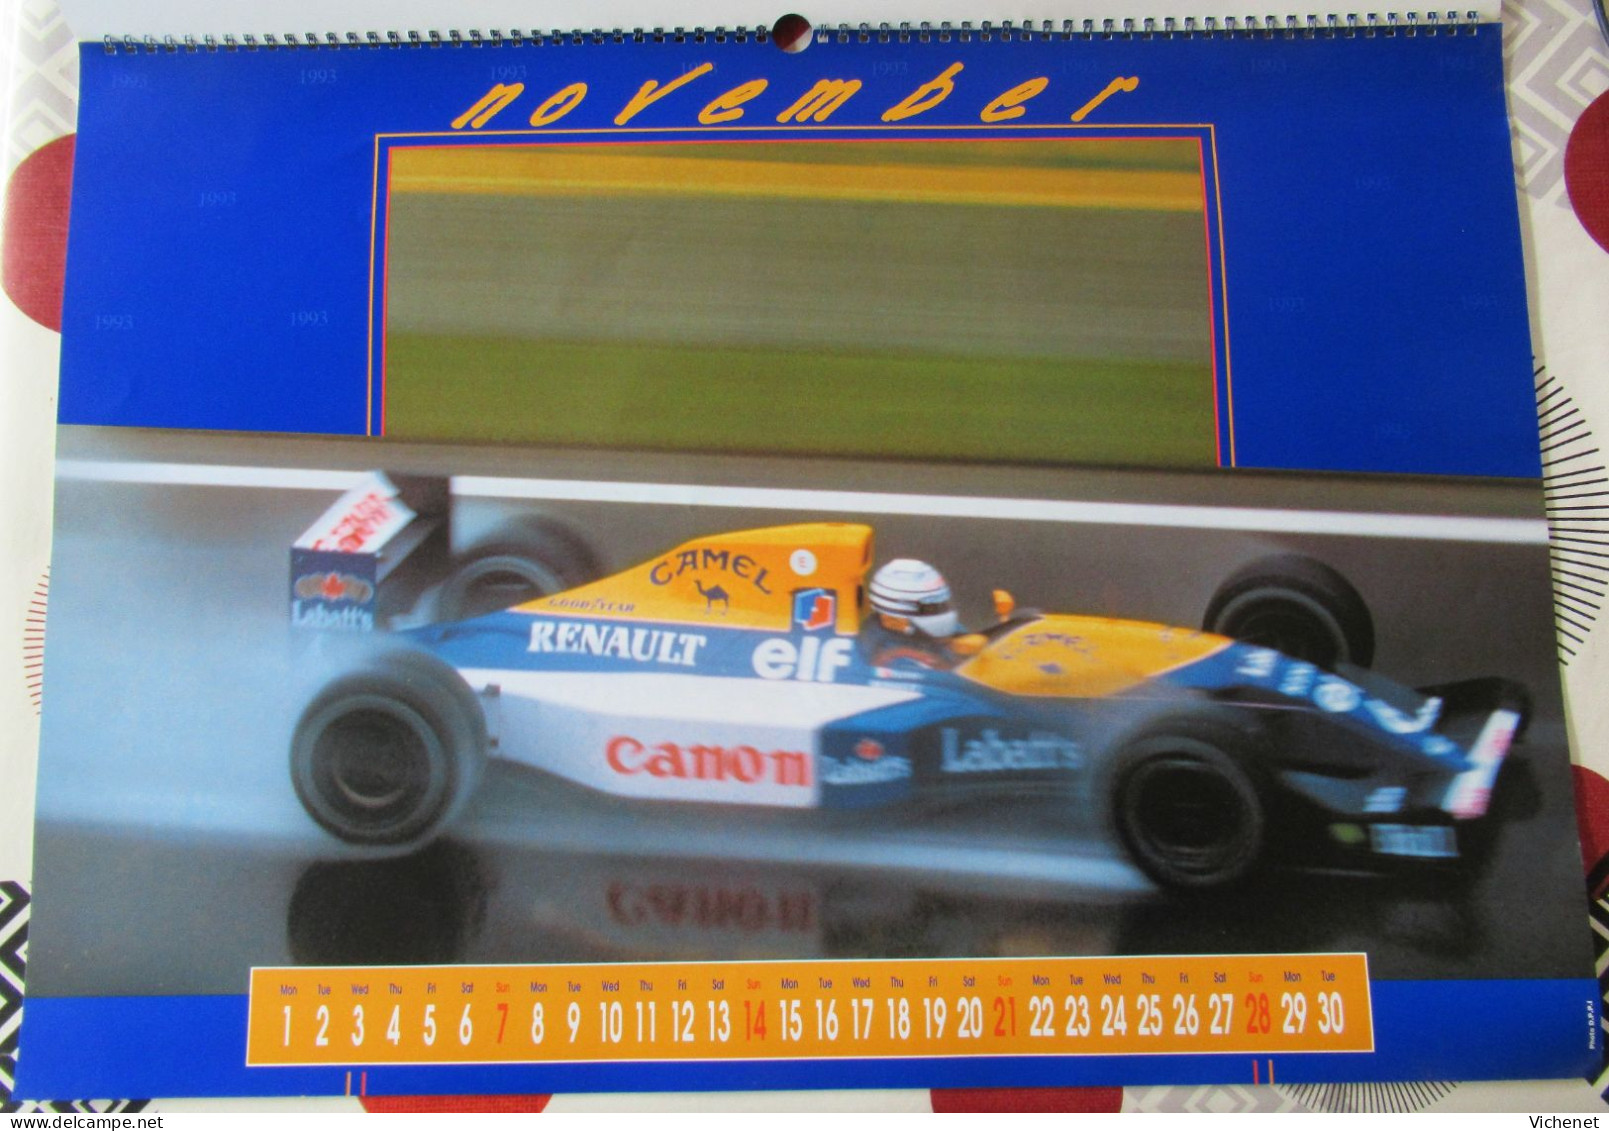 Camel Formula 1 - 1993 - 60 x 42 cm - Schumacher - Mansell